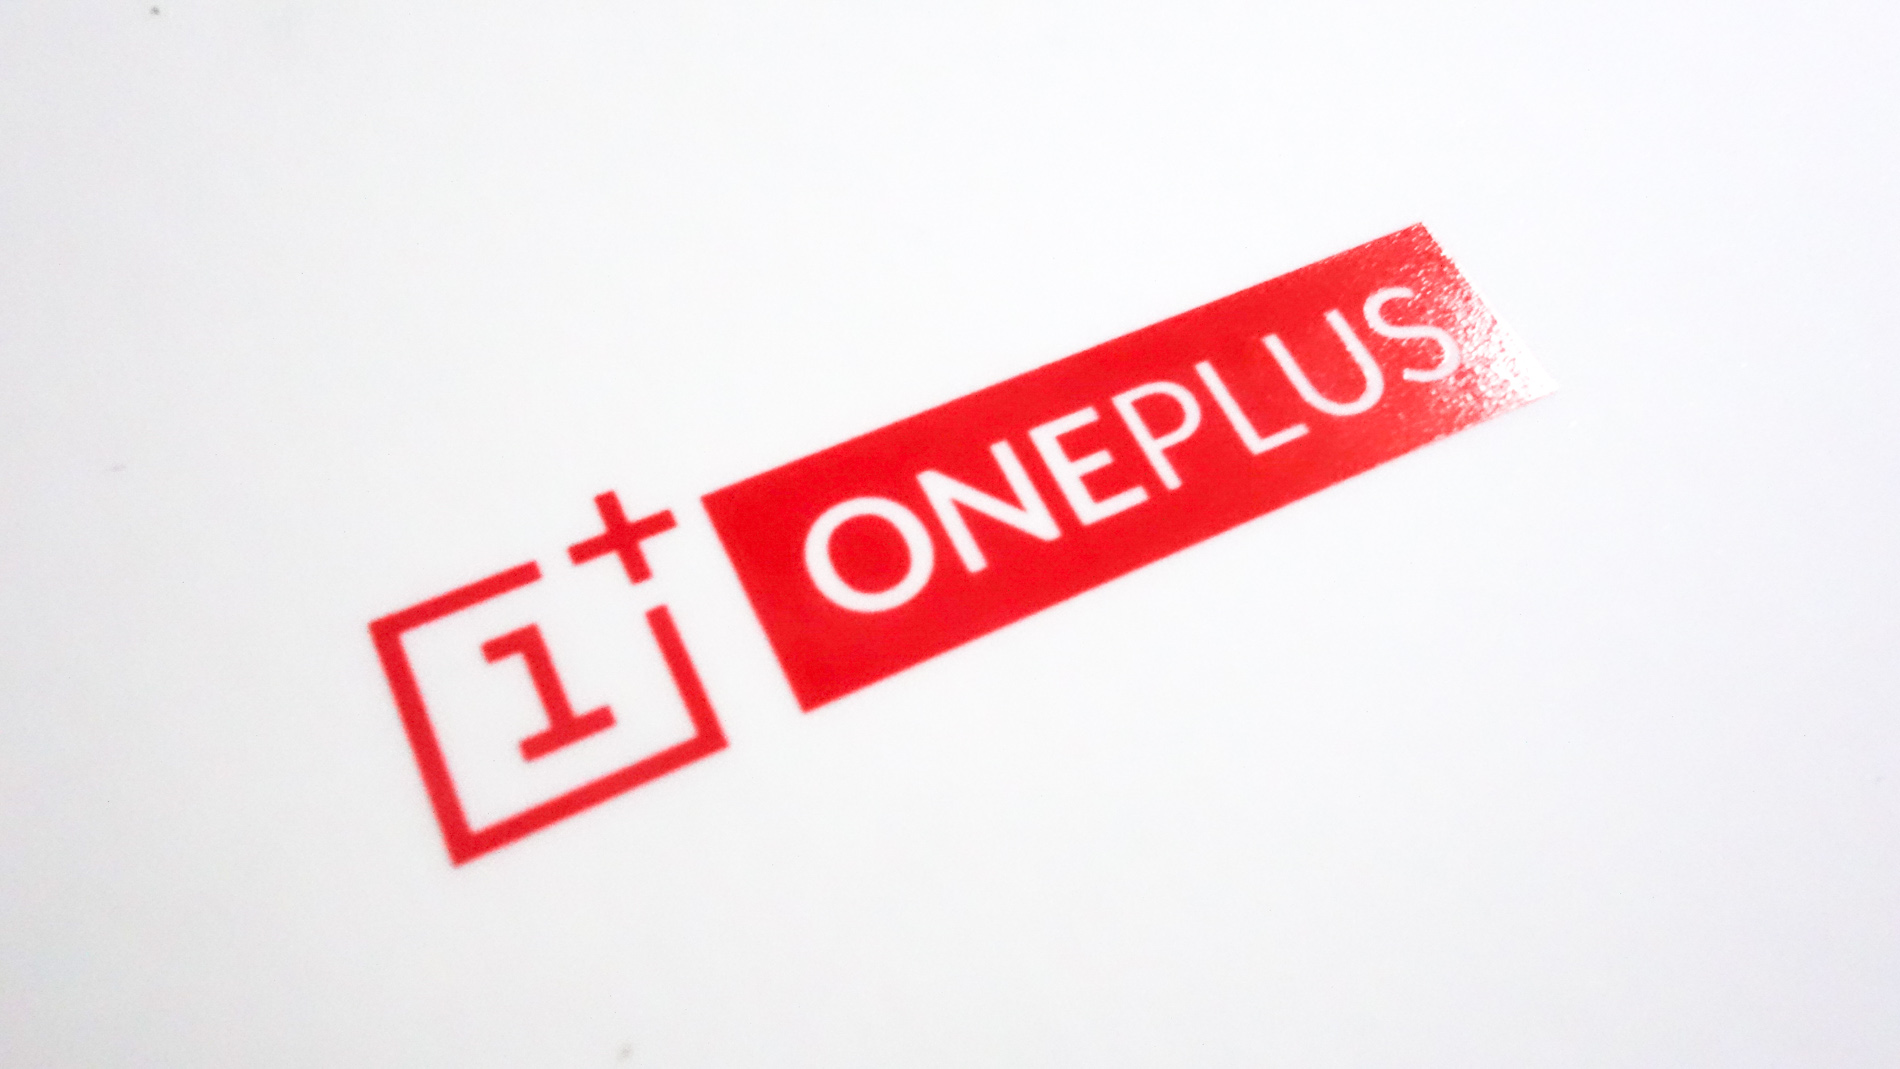 تسريبات عن جوال OnePlus 6 القادم مع سماعة أذن لاسلكية مدونة نظام أون لاين التقنية